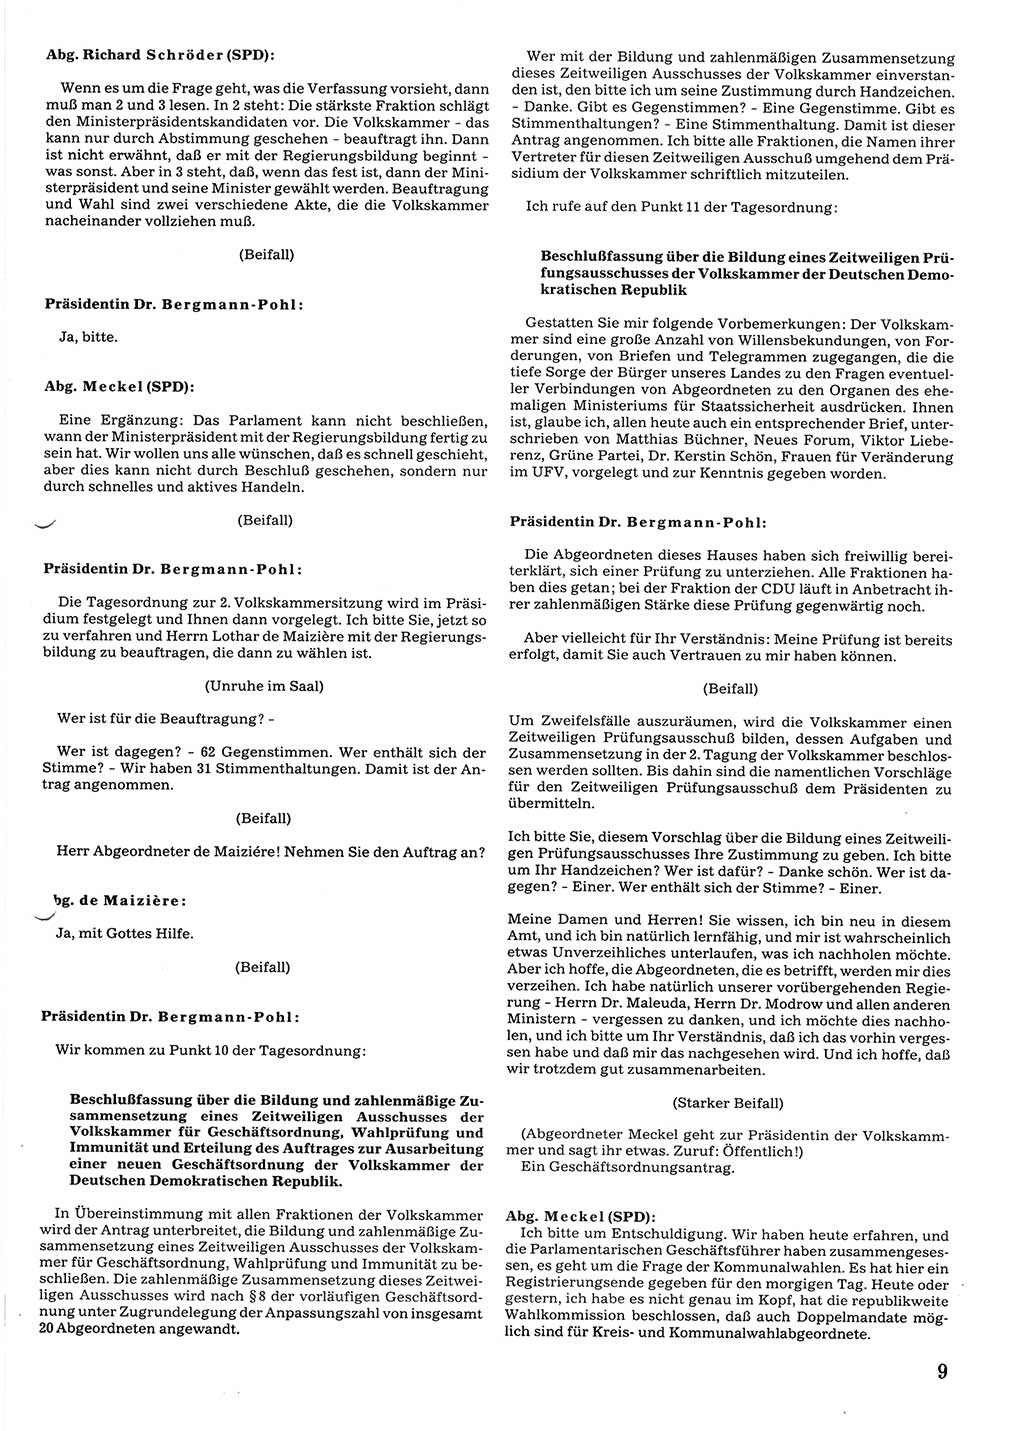 Tagungen der Volkskammer (VK) der Deutschen Demokratischen Republik (DDR), 10. Wahlperiode 1990, Seite 9 (VK. DDR 10. WP. 1990, Prot. Tg. 1-38, 5.4.-2.10.1990, S. 9)